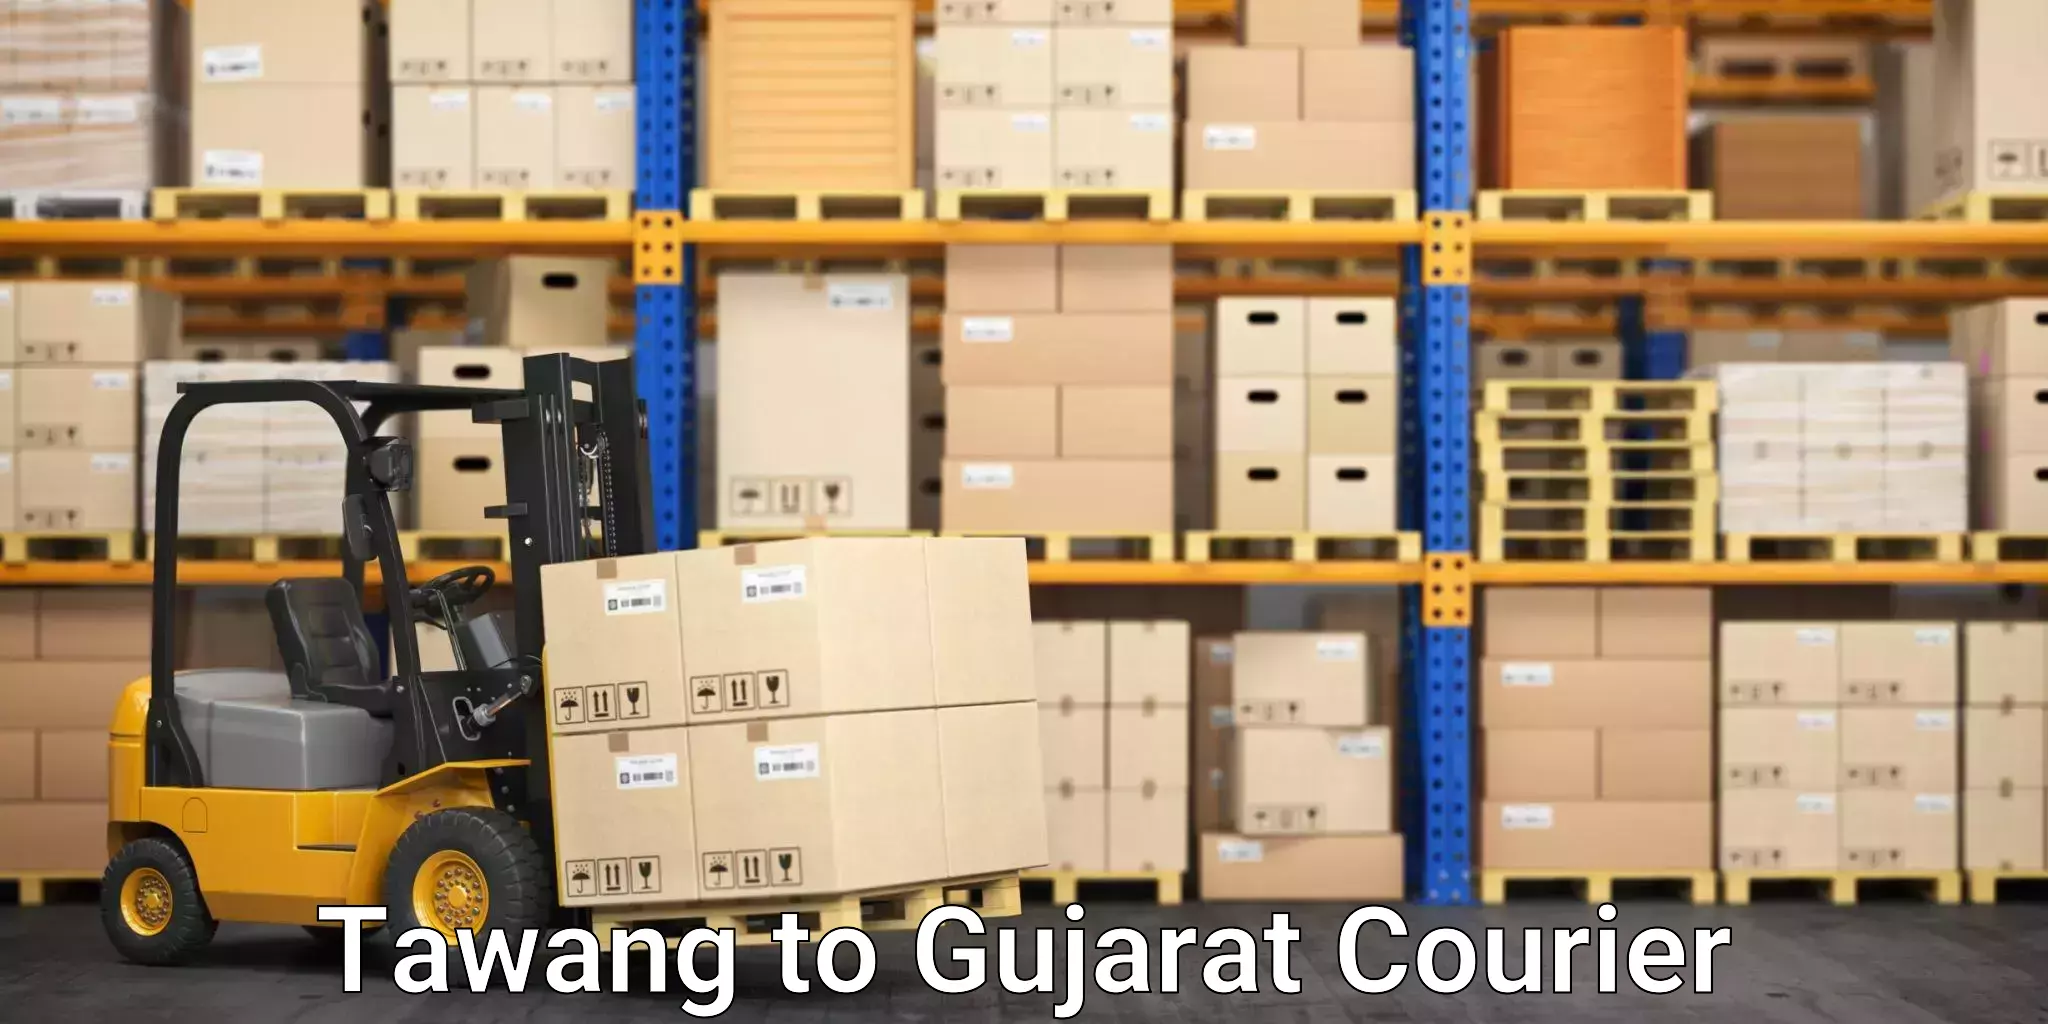 Expedited shipping solutions Tawang to Patan Gujarat